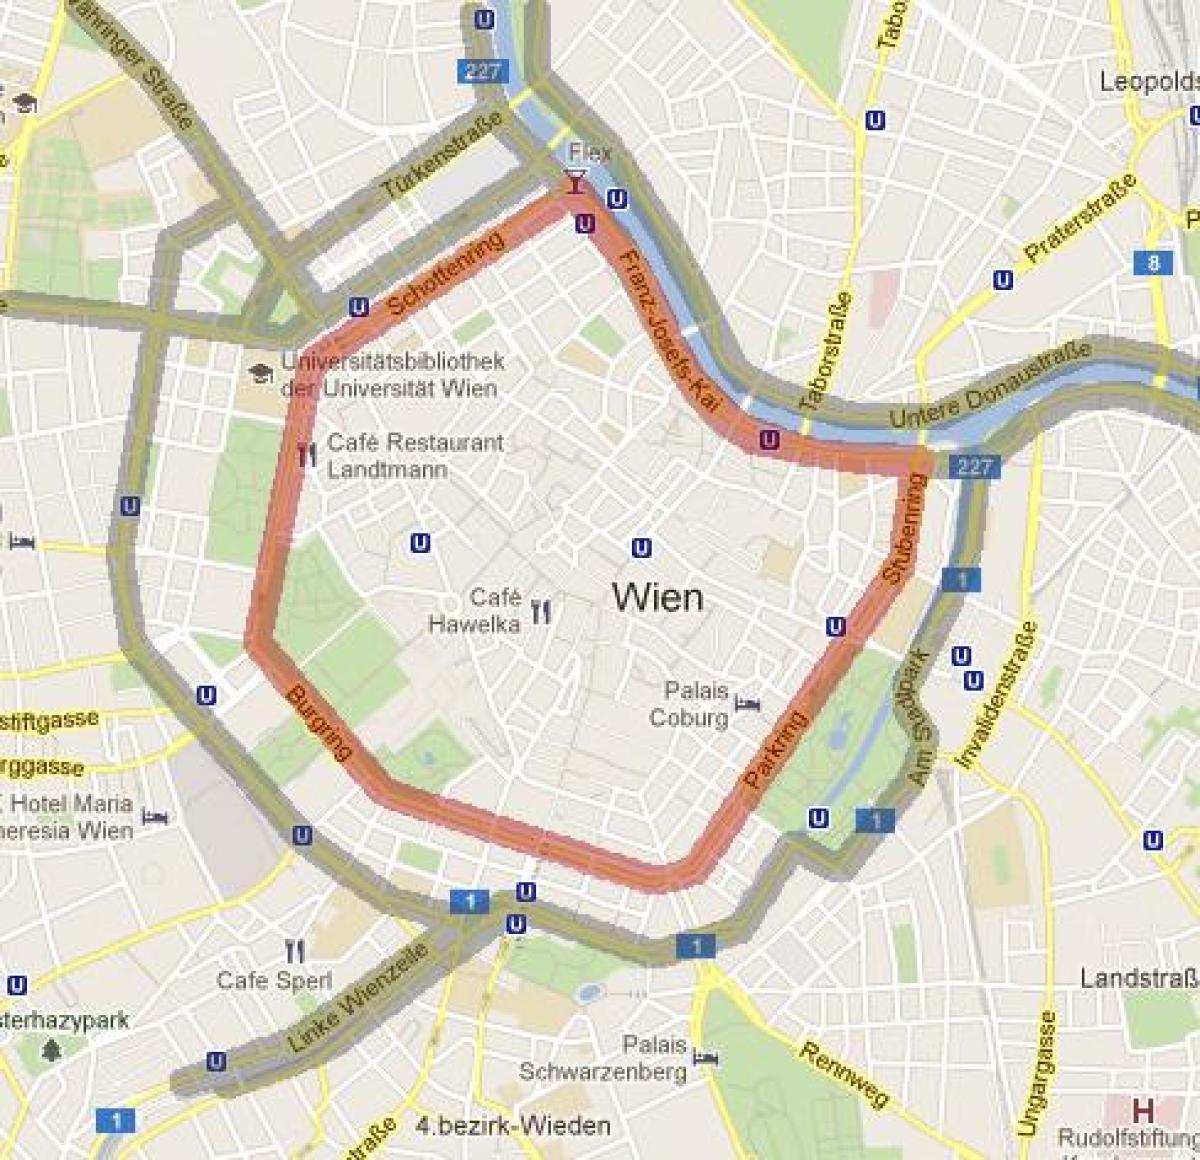 فيينا منطقة 7 خريطة